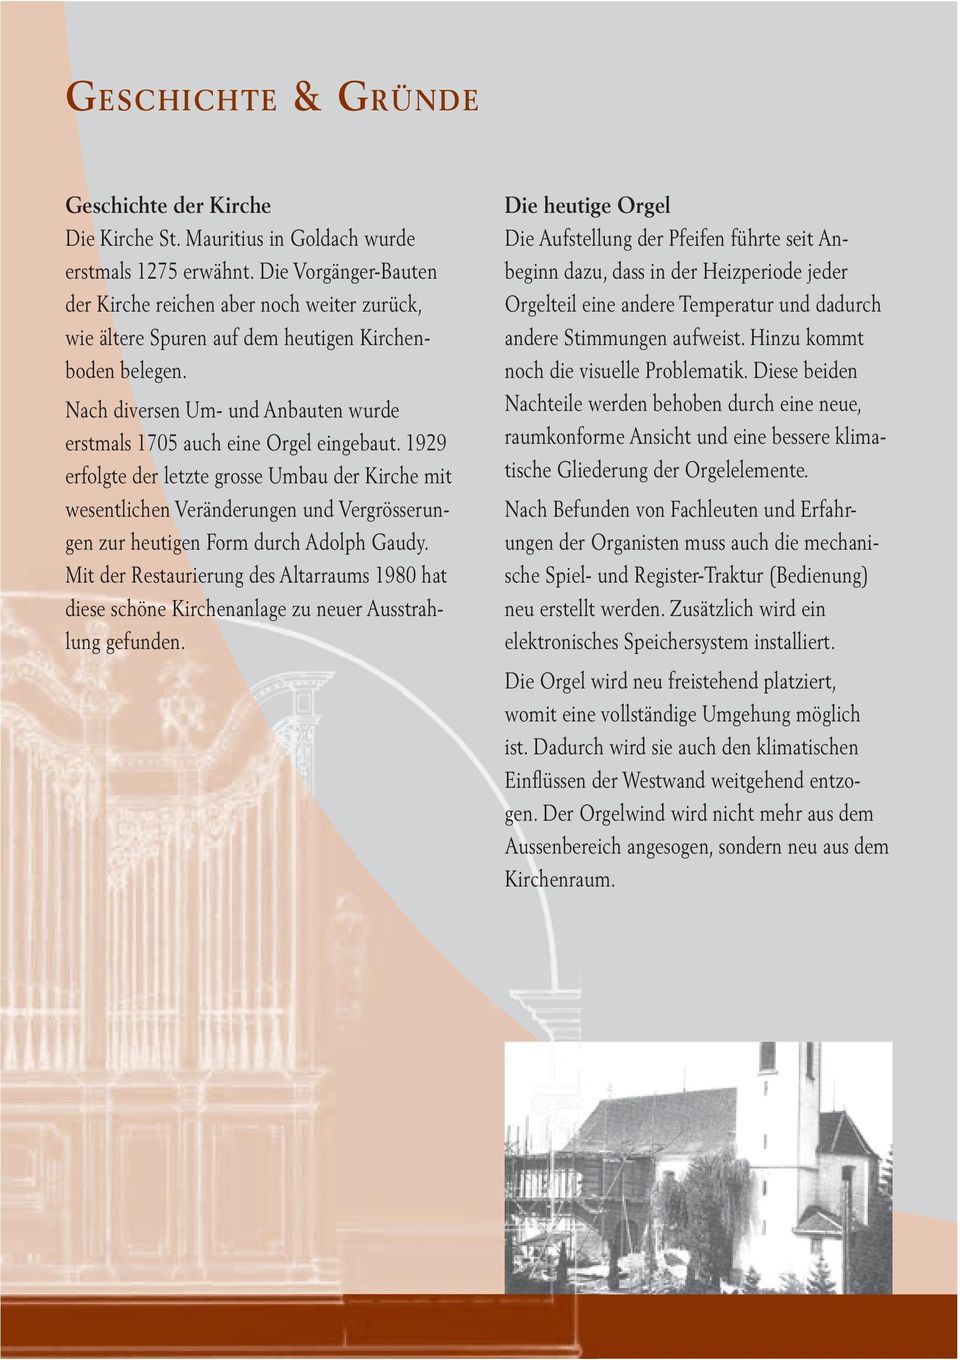 1929 erfolgte der letzte grosse Umbau der Kirche mit wesentlichen Veränderungen und Vergrösserungen zur heutigen Form durch Adolph Gaudy.